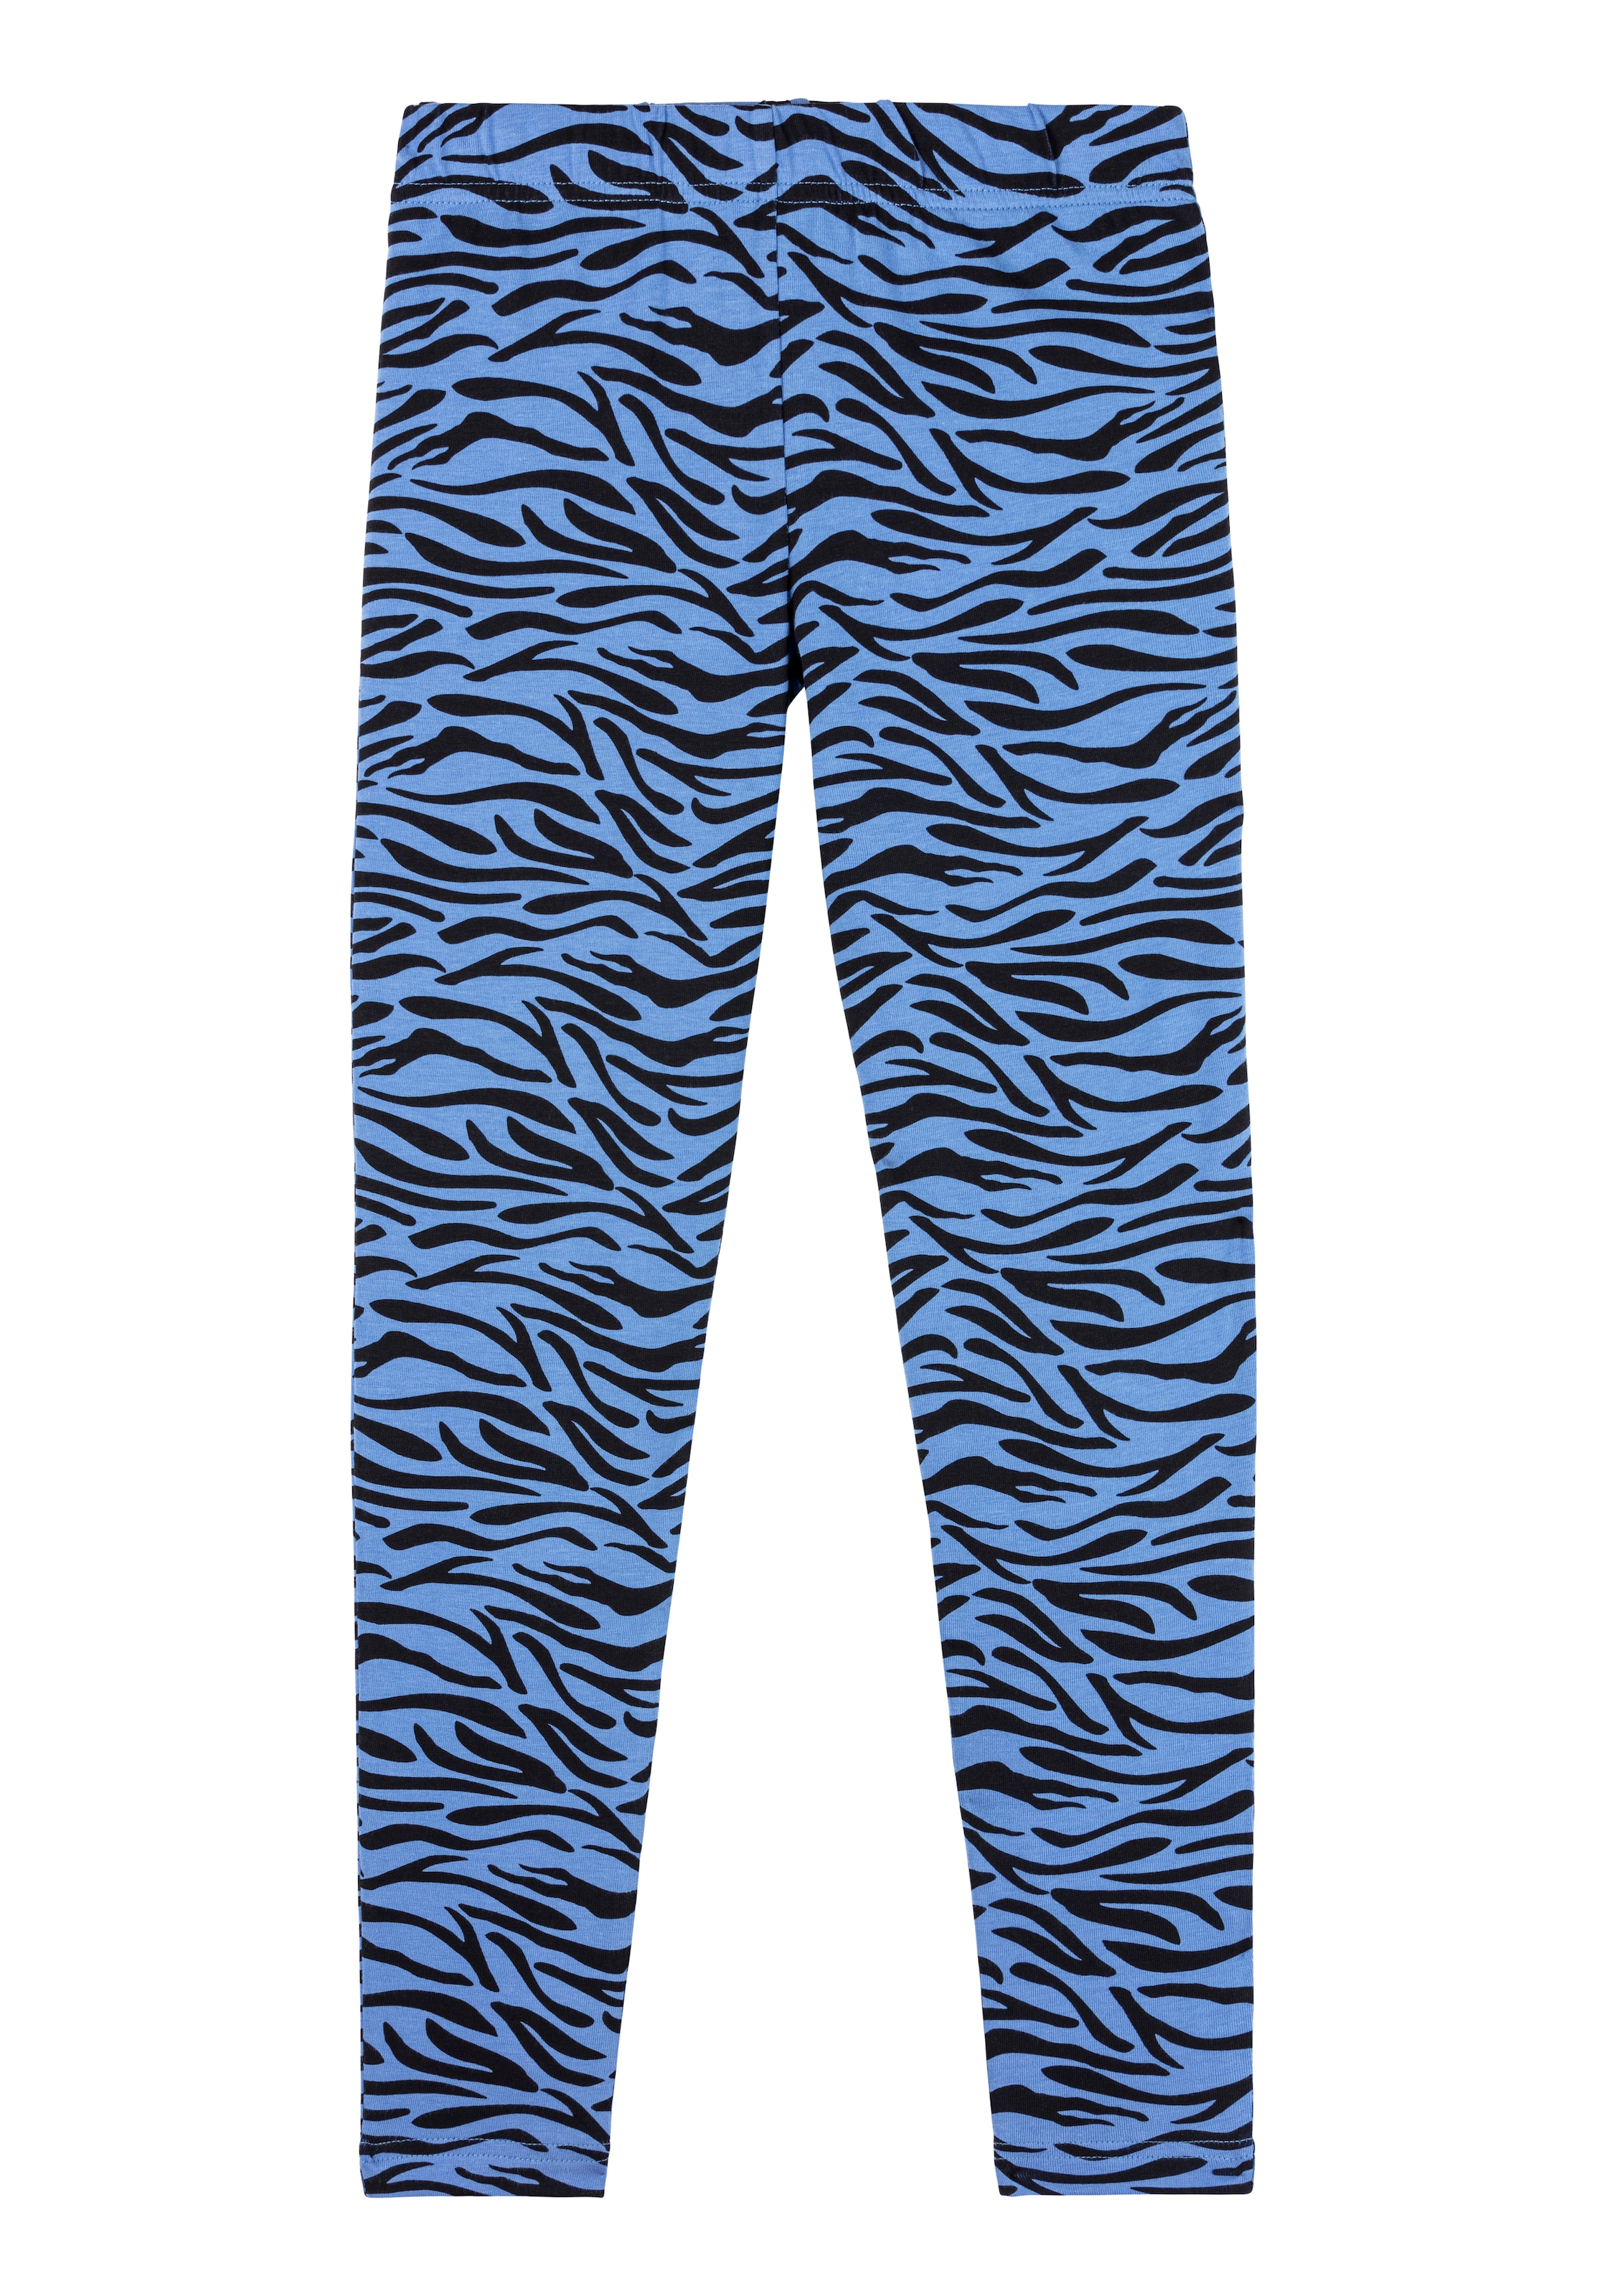 (2 tlg., 1 Stück), Zebra-Muster Pyjama, Buffalo online kaufen mit